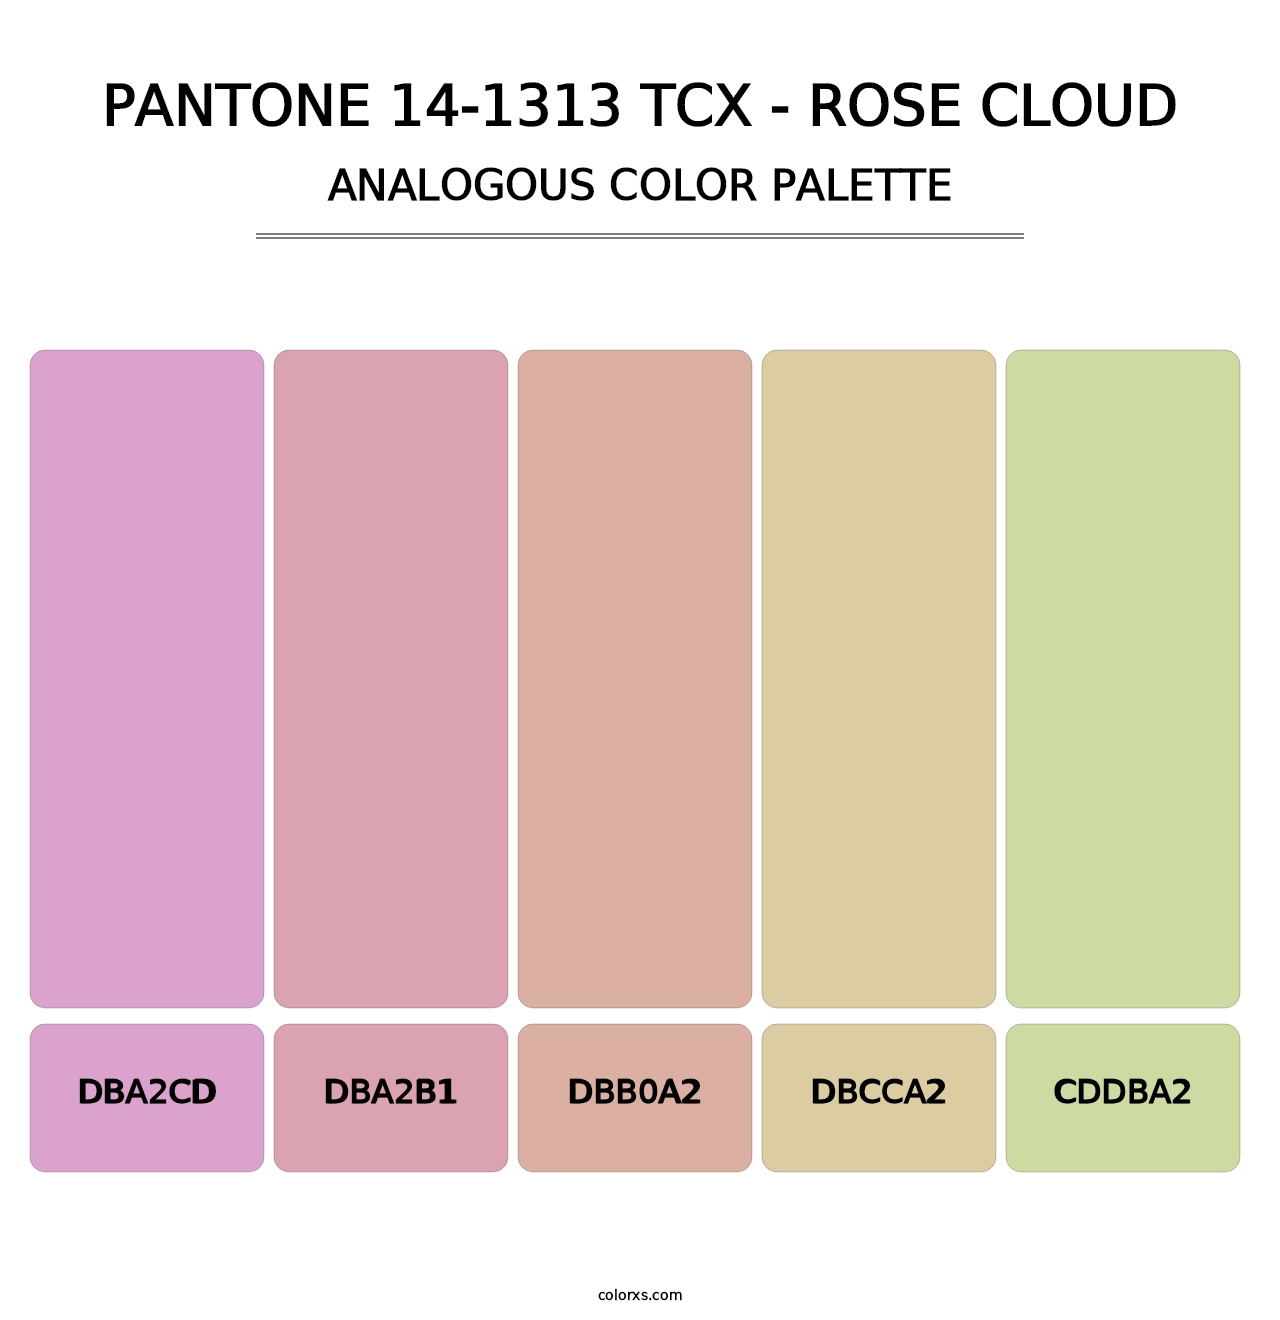 PANTONE 14-1313 TCX - Rose Cloud - Analogous Color Palette